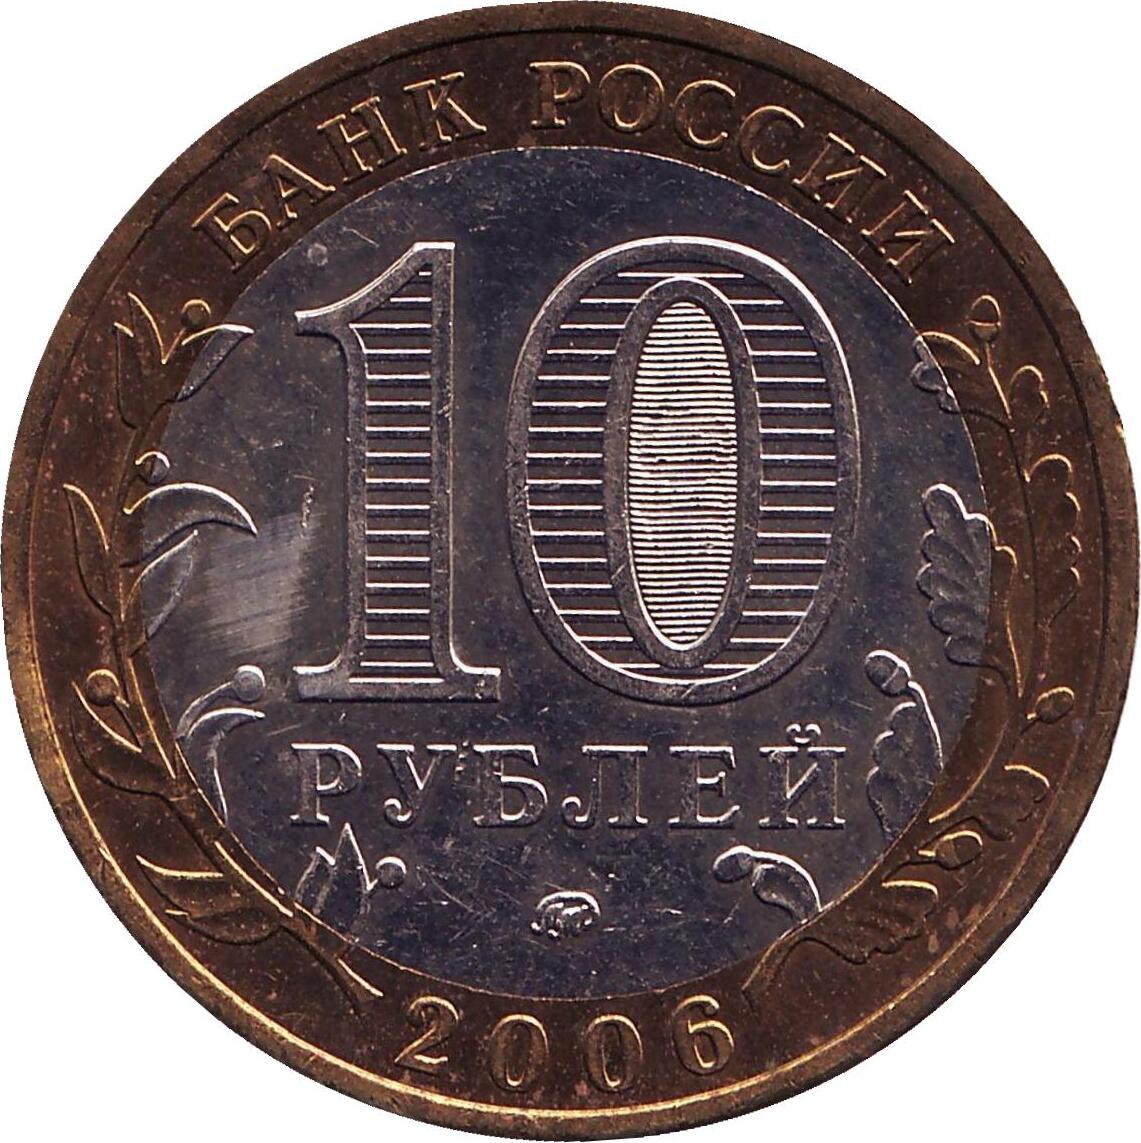 Купить монету московский монетный